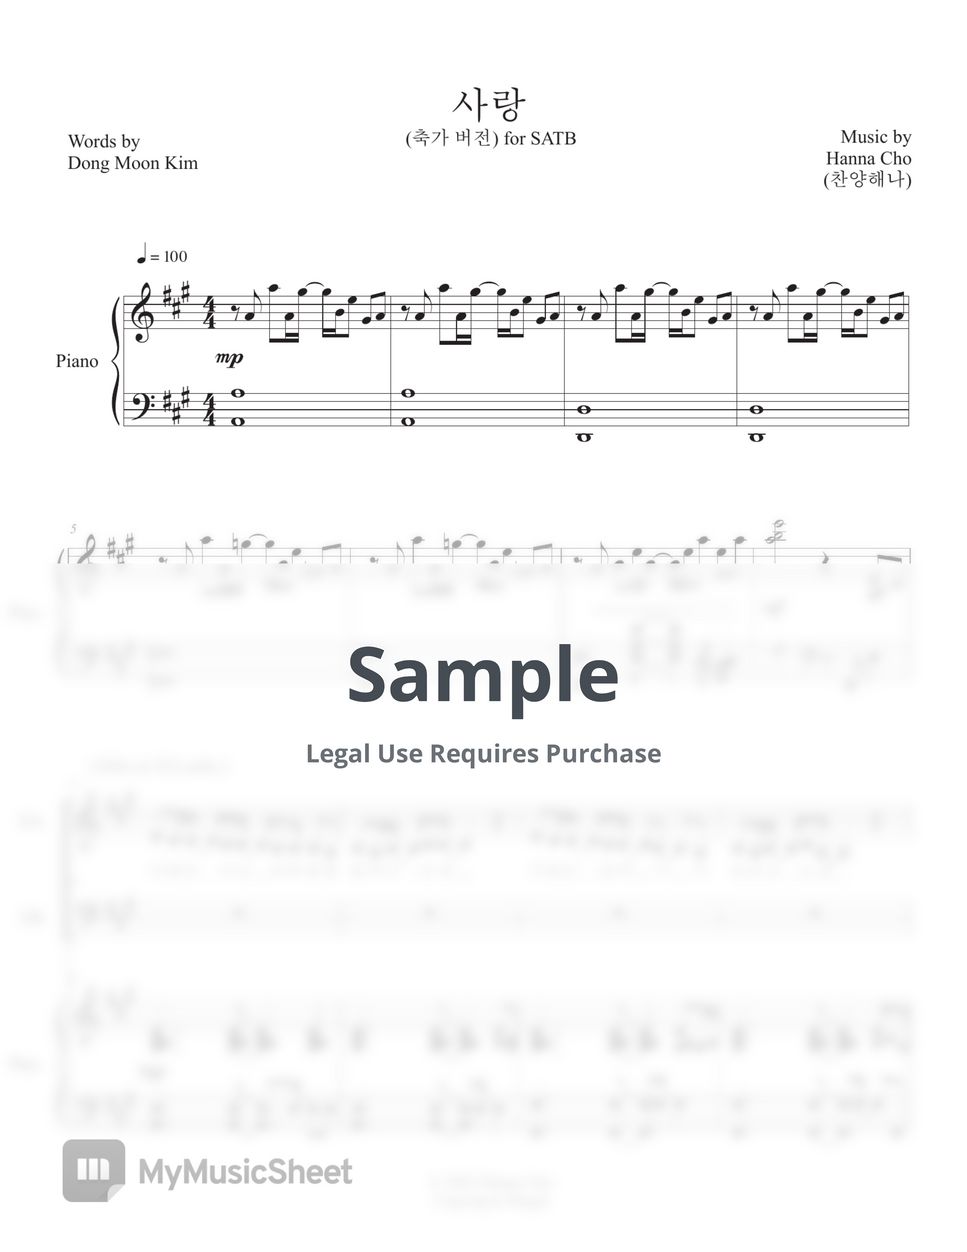 Hanna Worship - Love(Wedding song ver.) - for SATB choir